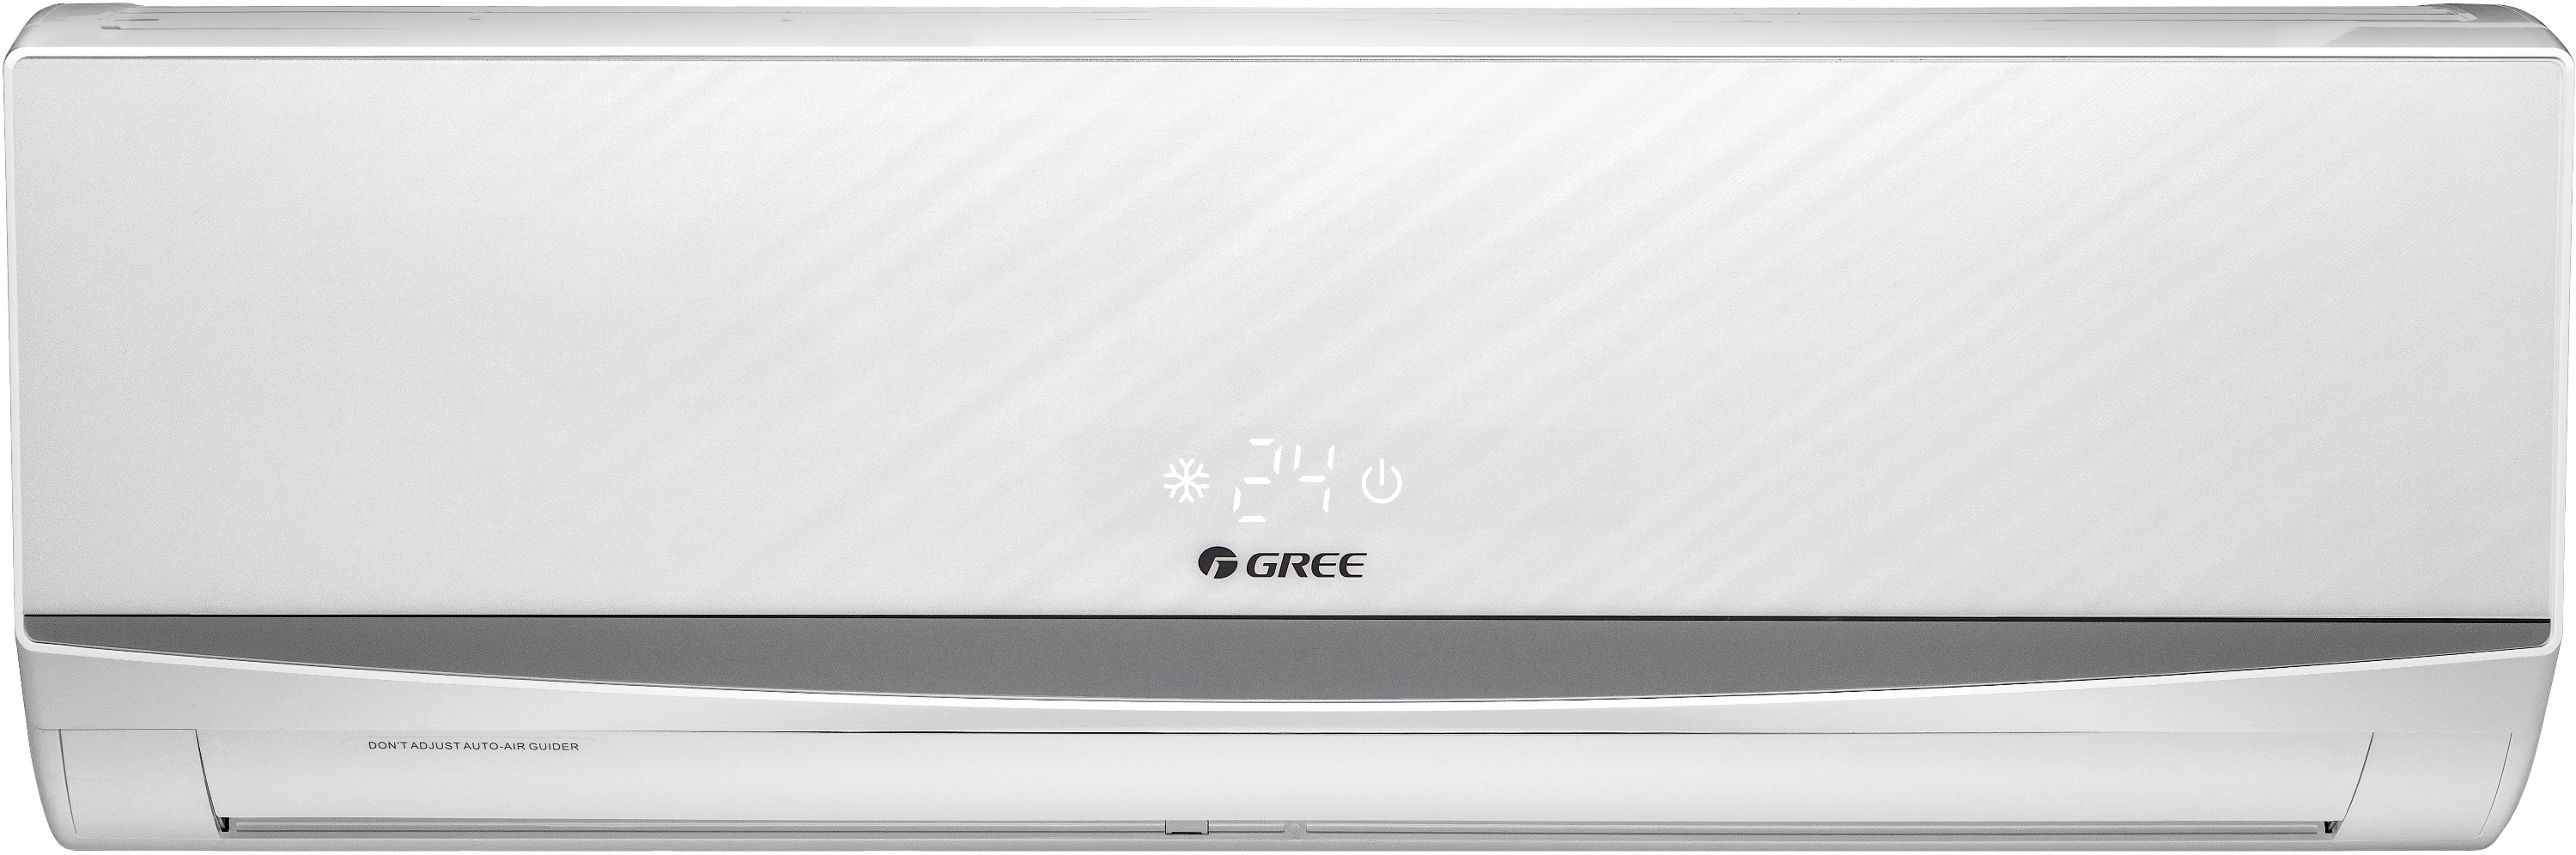 Кондиционер сплит-система Gree Lomo White GWH24QE-K6DND2K цена 0.00 грн - фотография 2